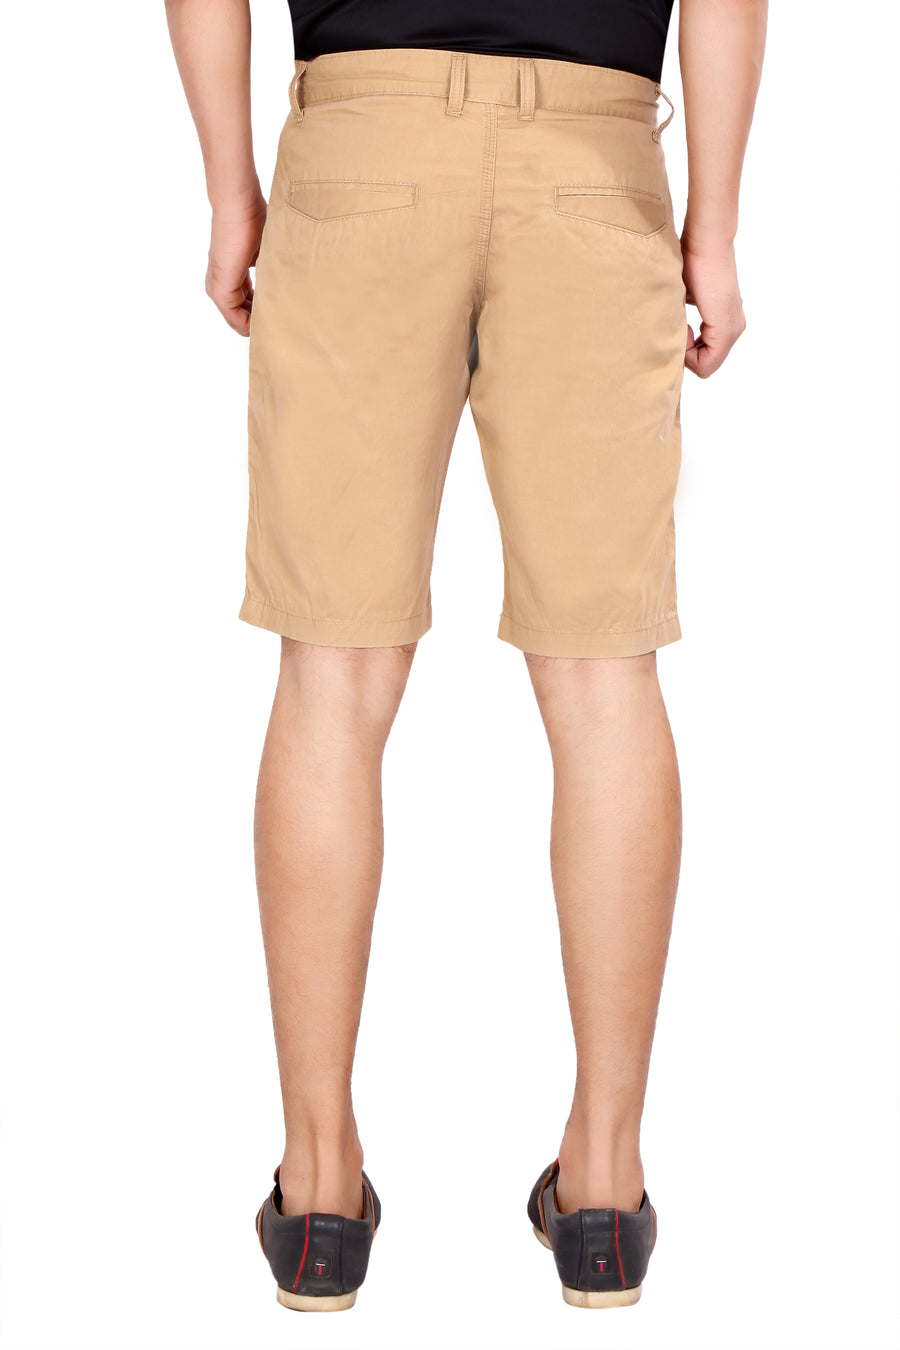 Men's Basic Khaki Shorts